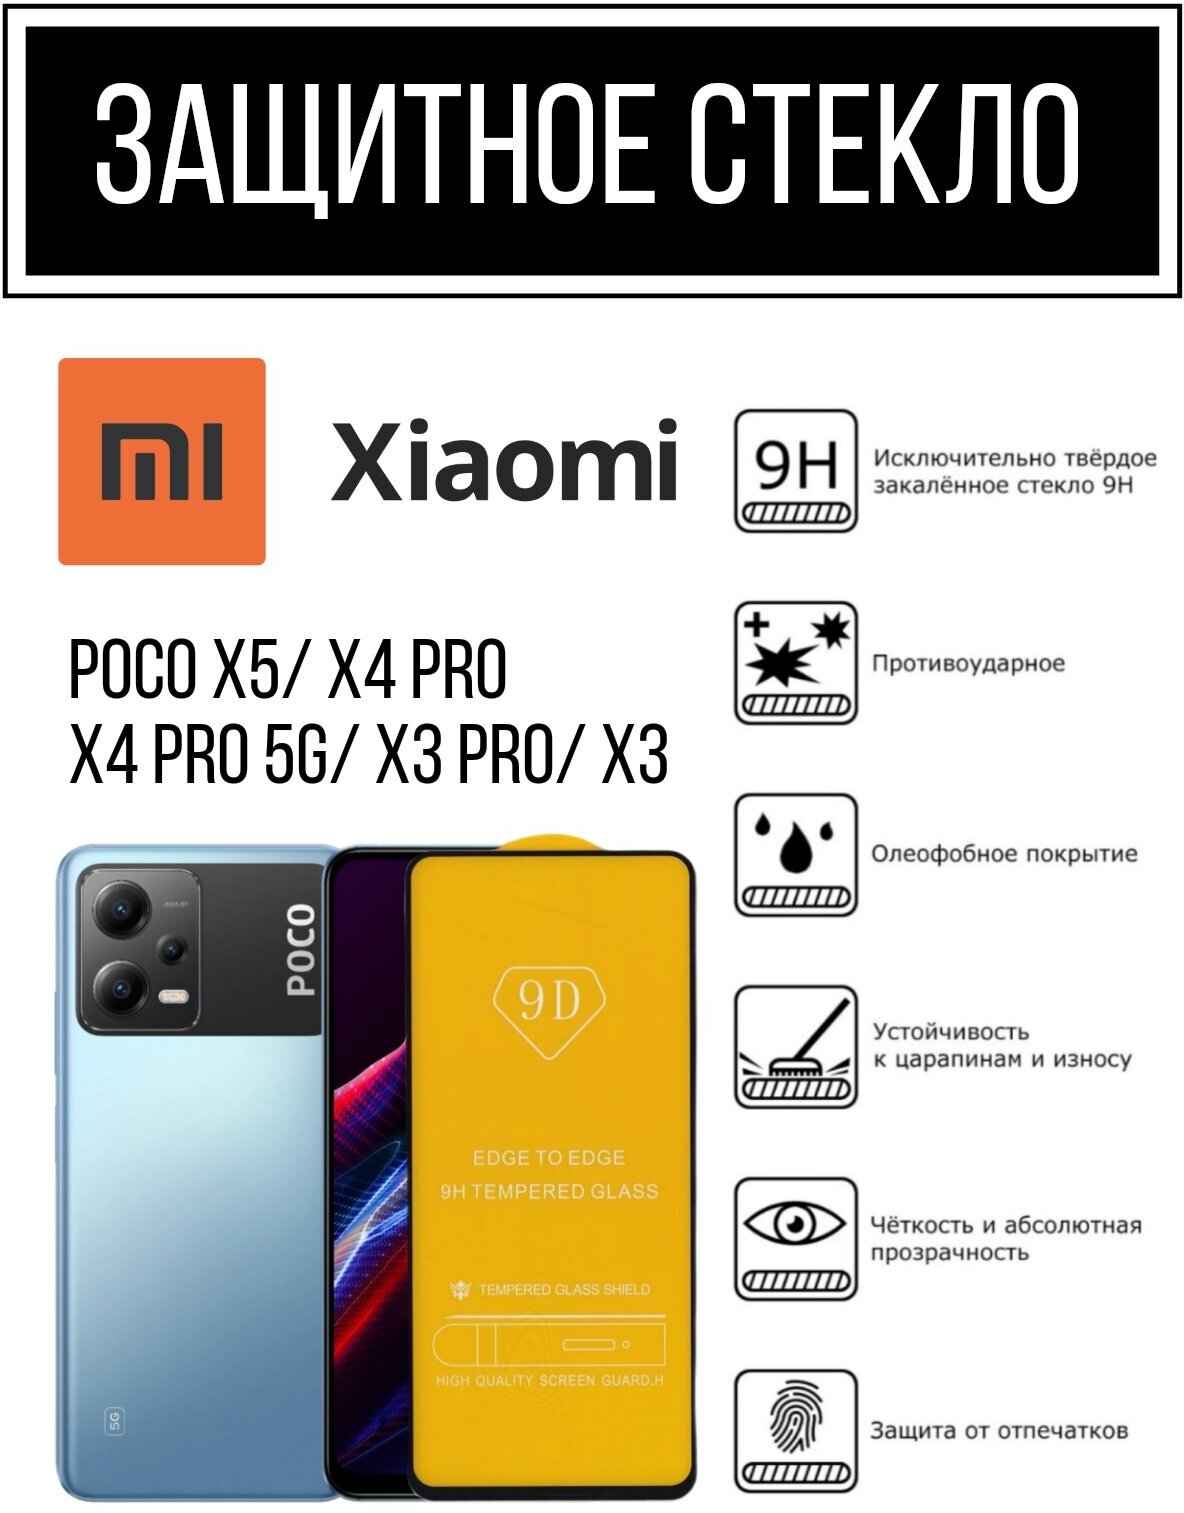 Противоударное закалённое защитное стекло для смартфонов Poco X5/ X4 Pro/ X4 Pro 5g/ X3 Pro/ X3 ( Поко Х5/ Х4 Про 5джи/ Х4 Про/ Х3 Про/ Х3 )